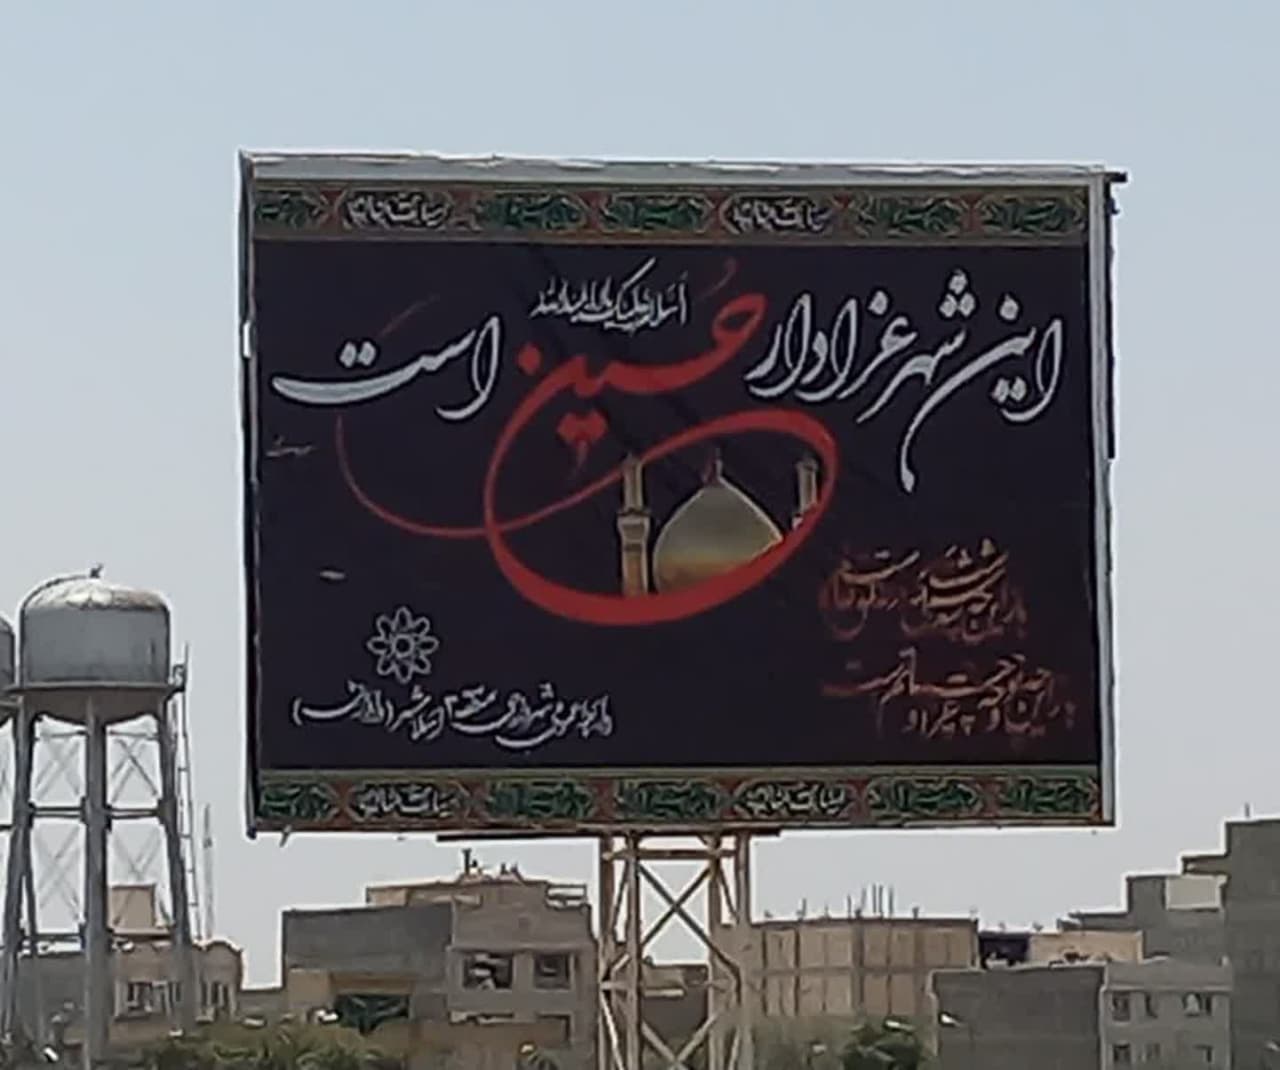 شهر در عزای حسین(ع) / اسلامشهر در سوگ سرور و سالار شهیدان رخت ماتم به تن کرده است